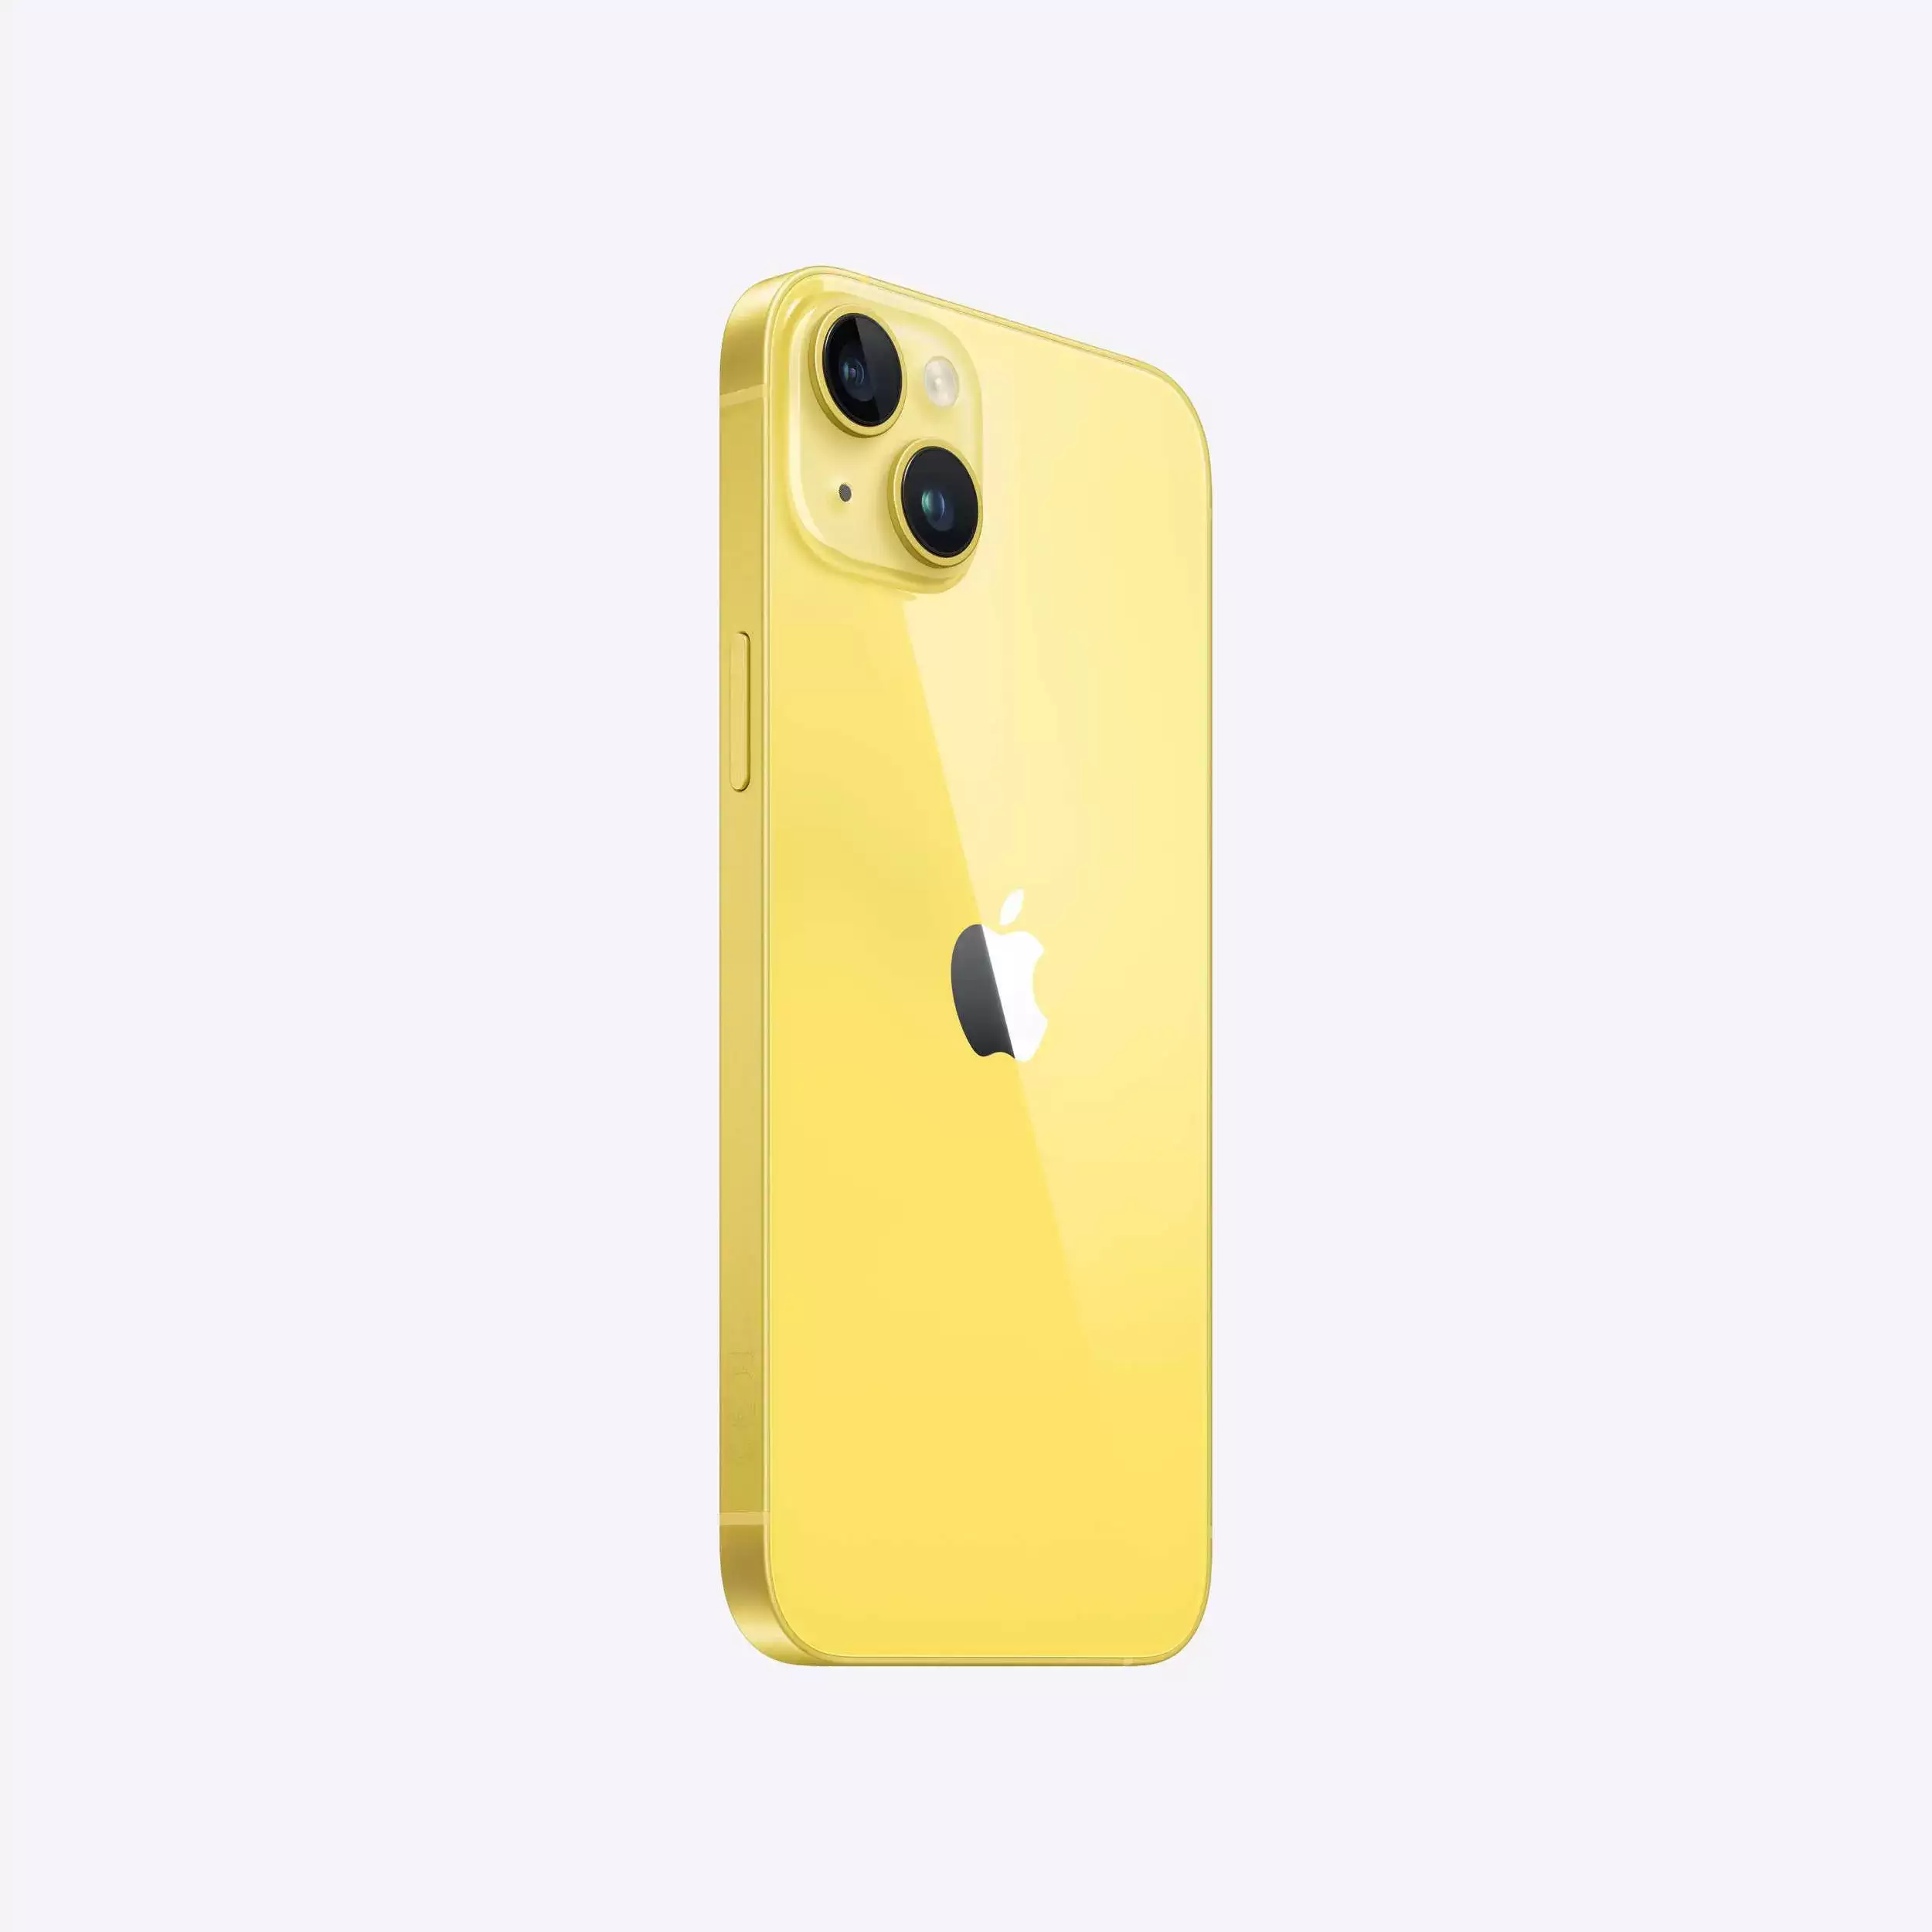 iPhone 14 Plus 256GB Sarı MR6D3TU/A